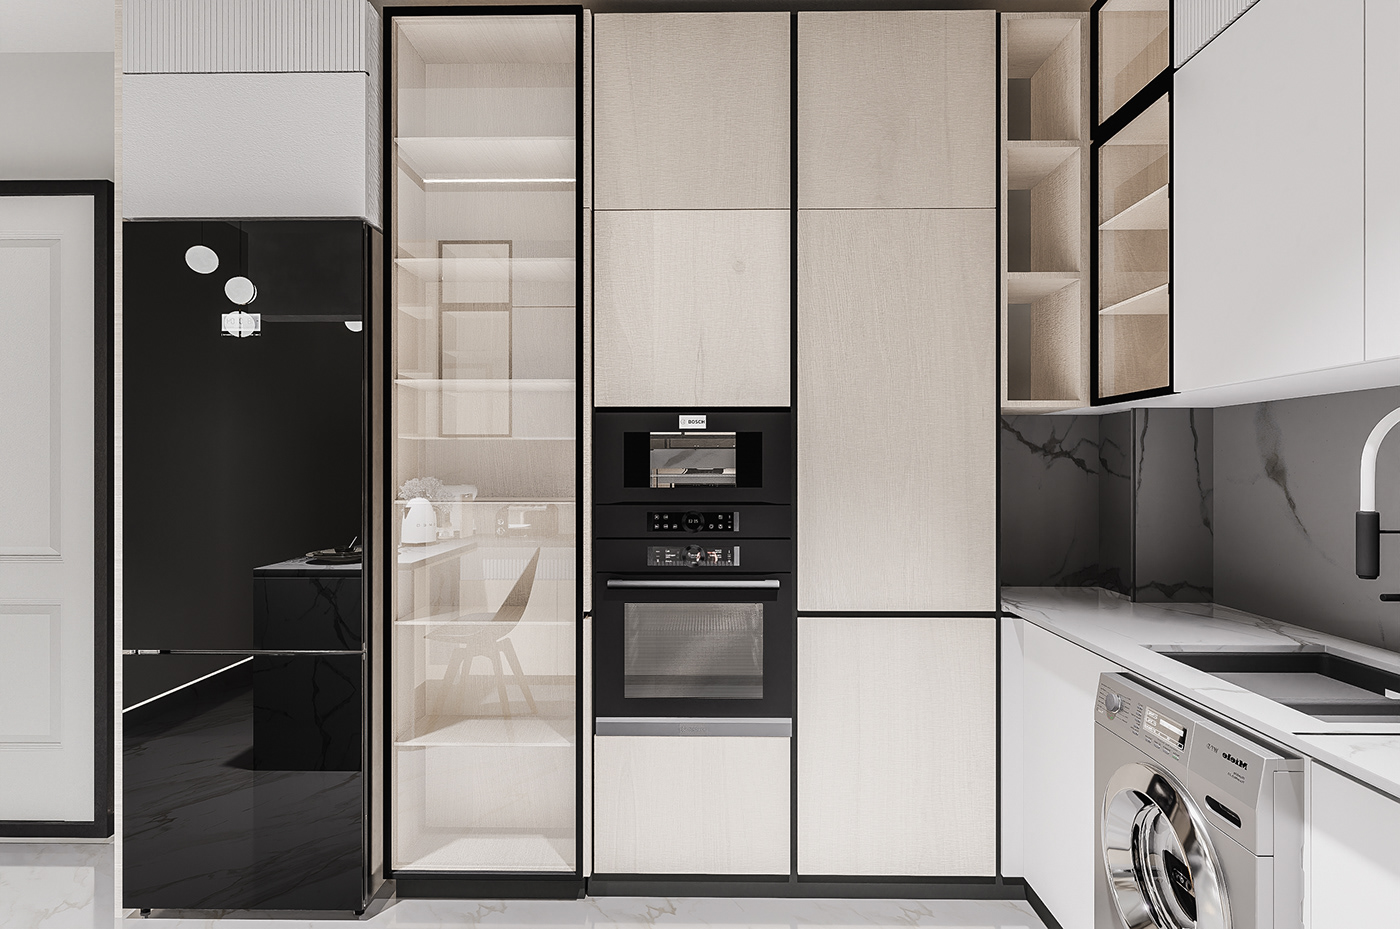 kitchen american kitchen interior design  Render visualization modern vray 3ds max refrigerator fridge